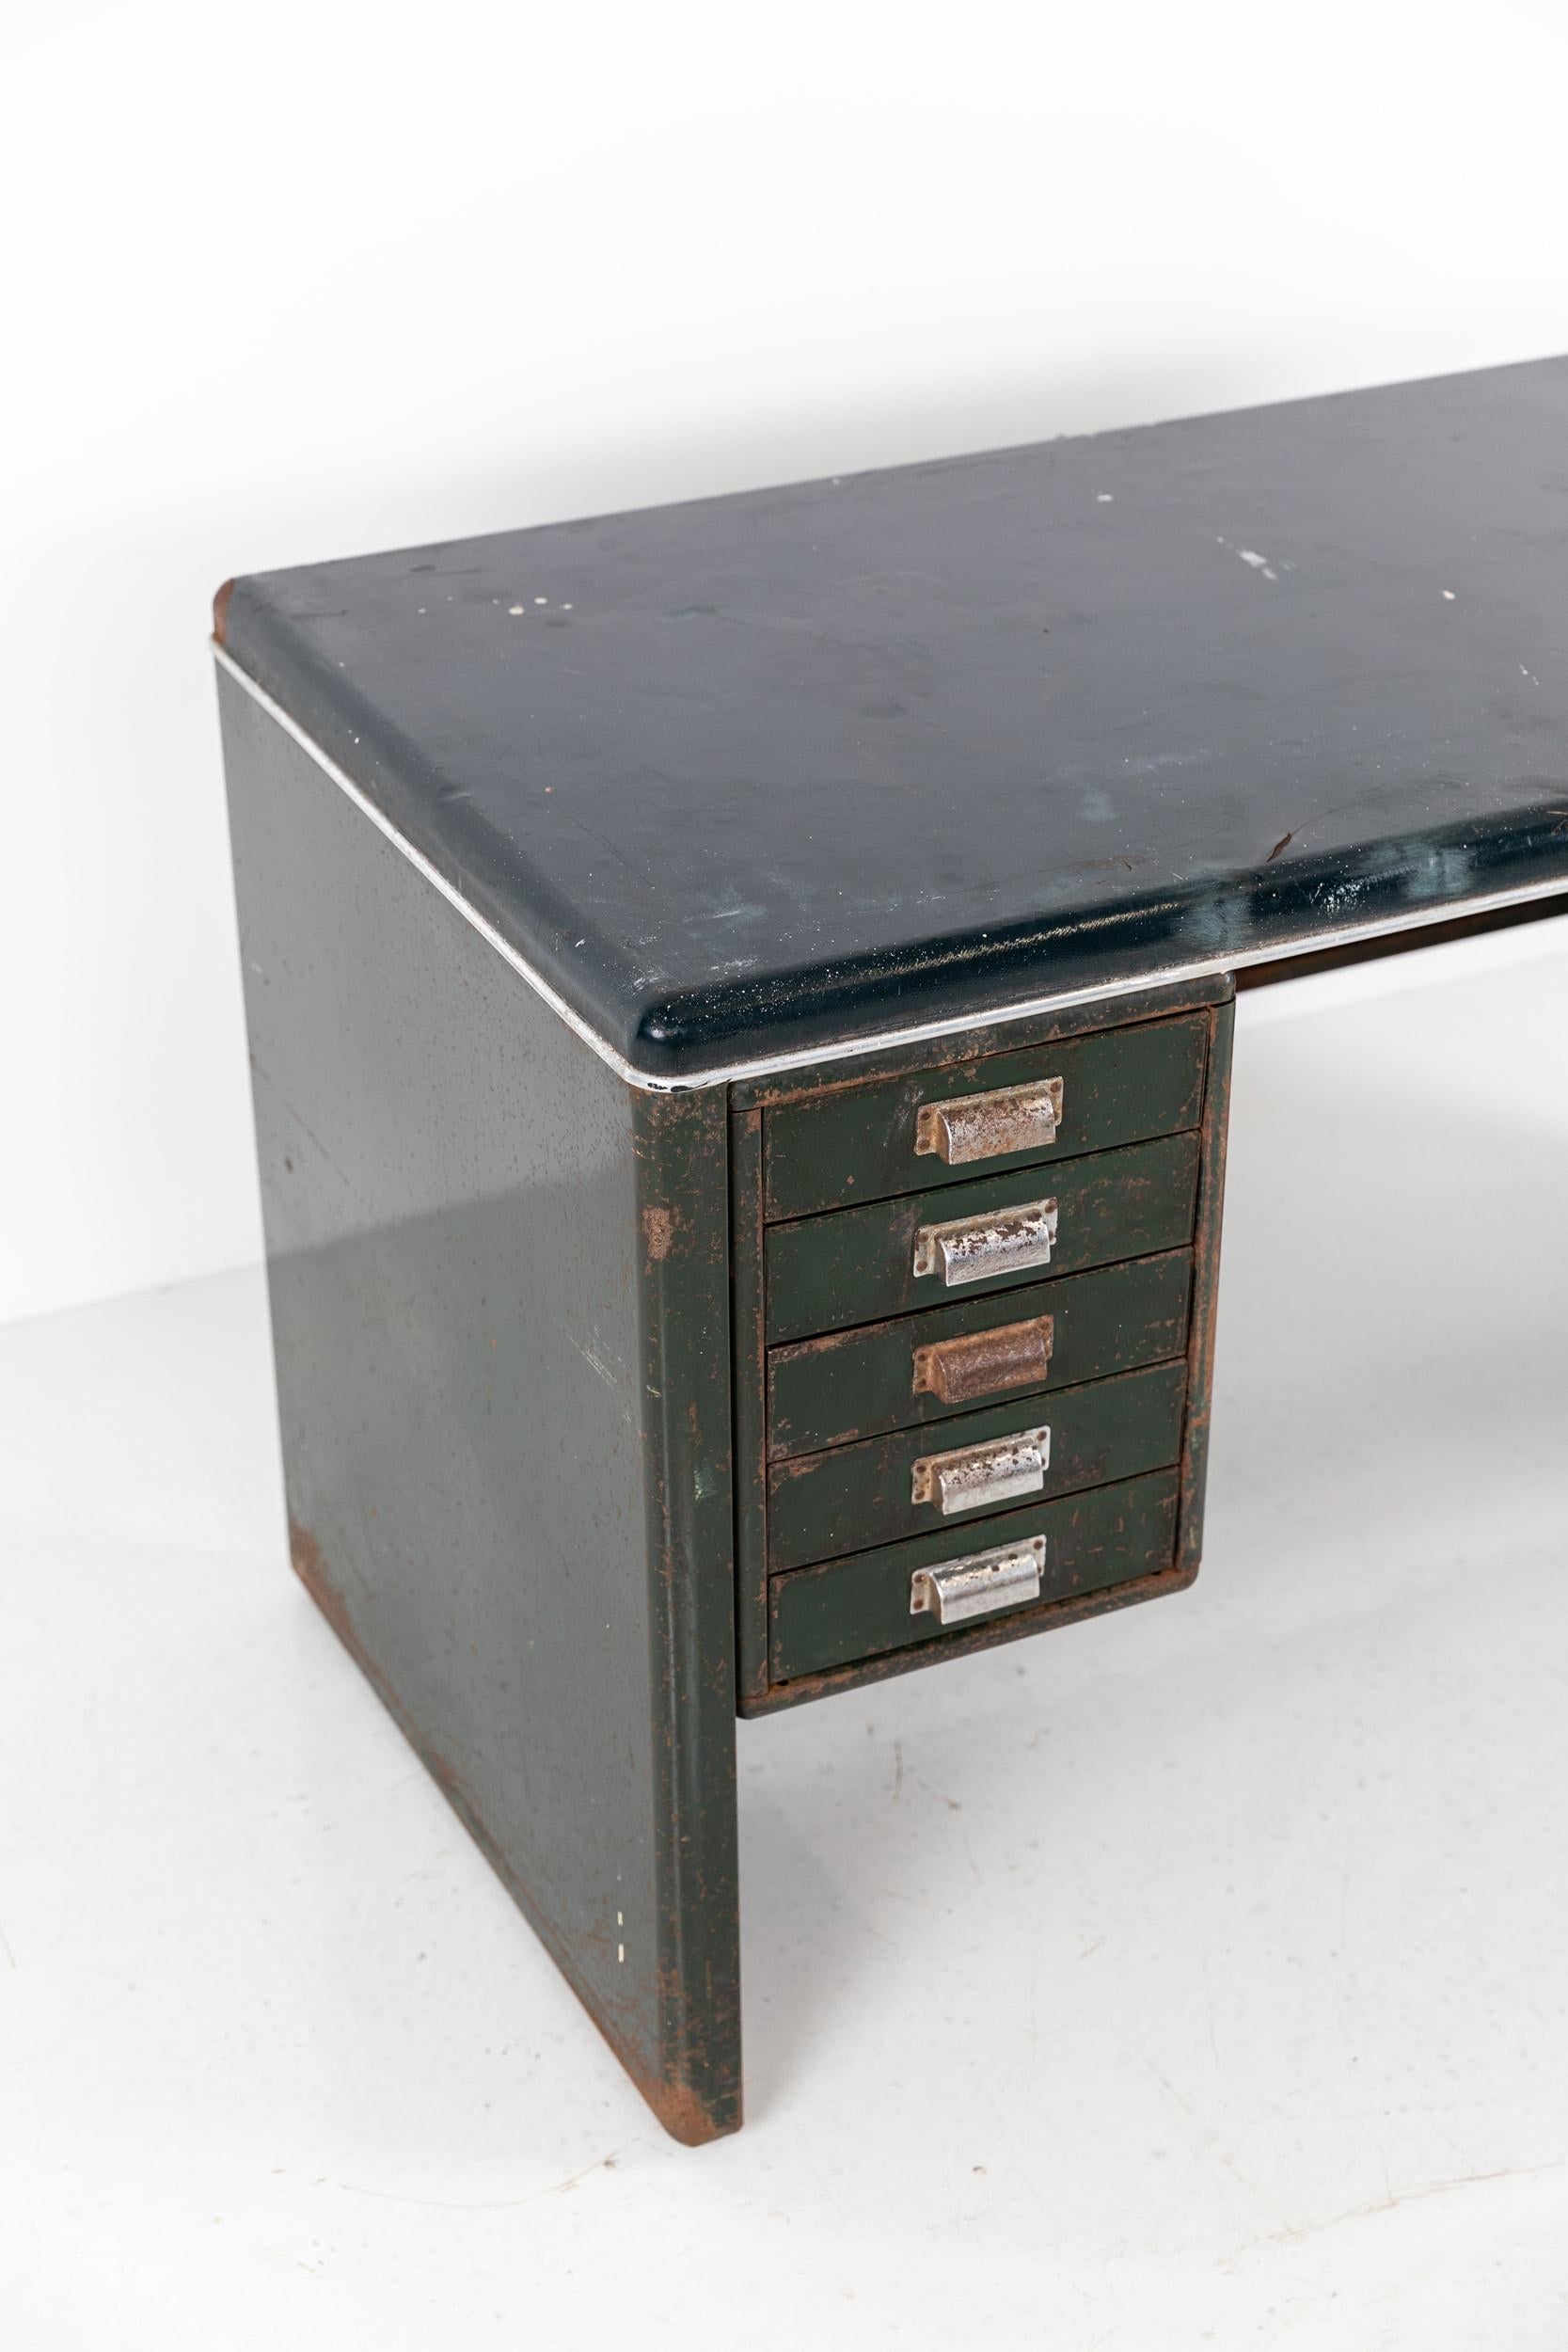 1950s metal desk